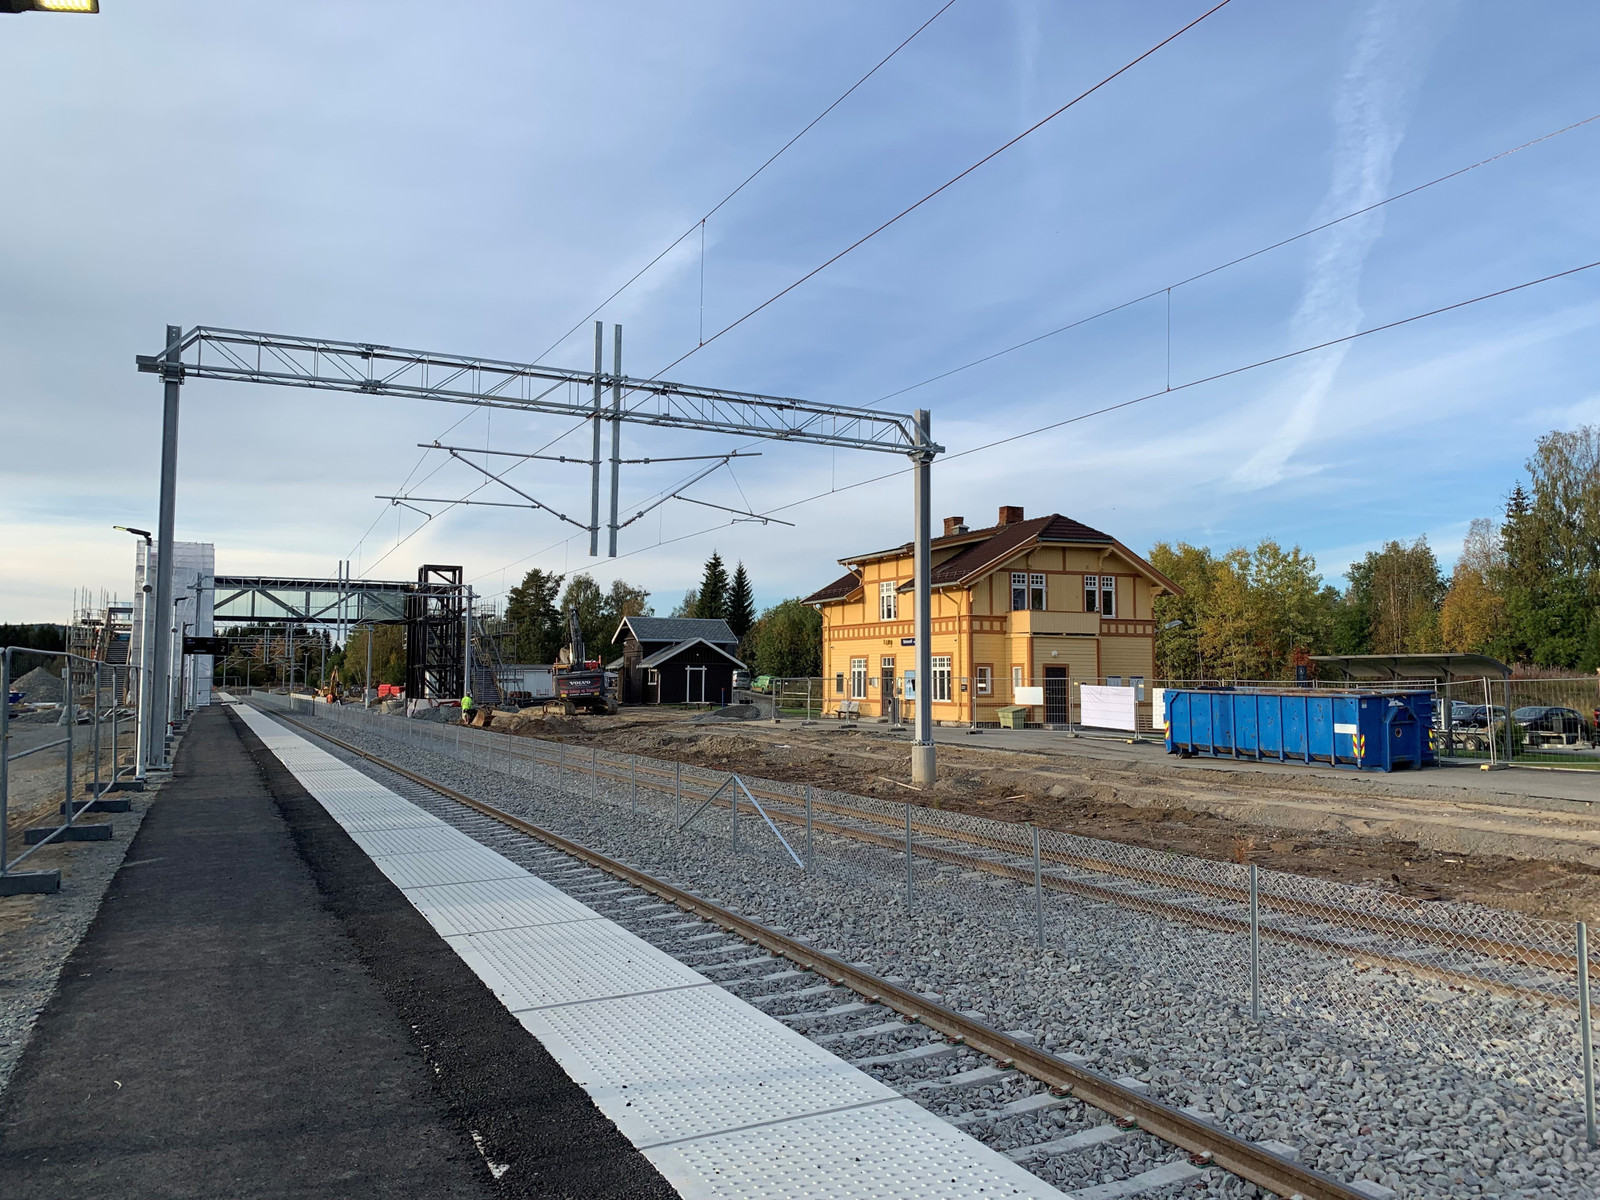 Gode togforbindelser retning Gjøvik og Oslo.